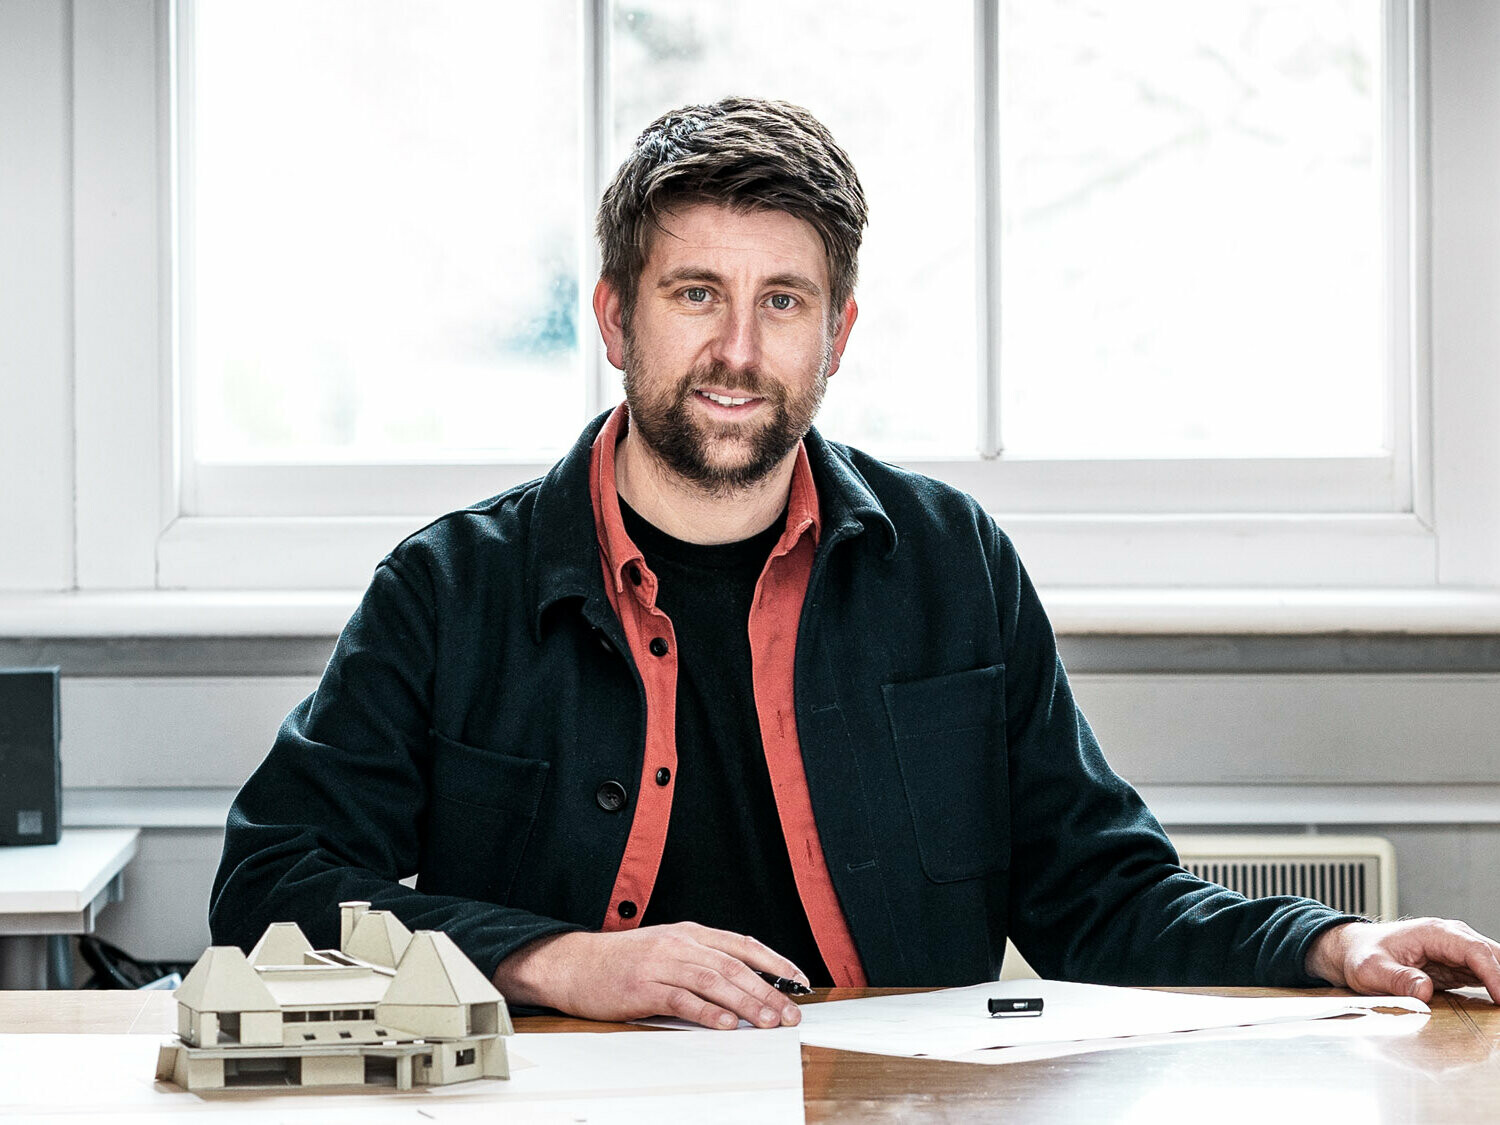 Portrait des leitenden Architekten Tim Howell vom britischen Büro Mitchell Evans Architects, vor einem Modell an einem Tisch sitzend.